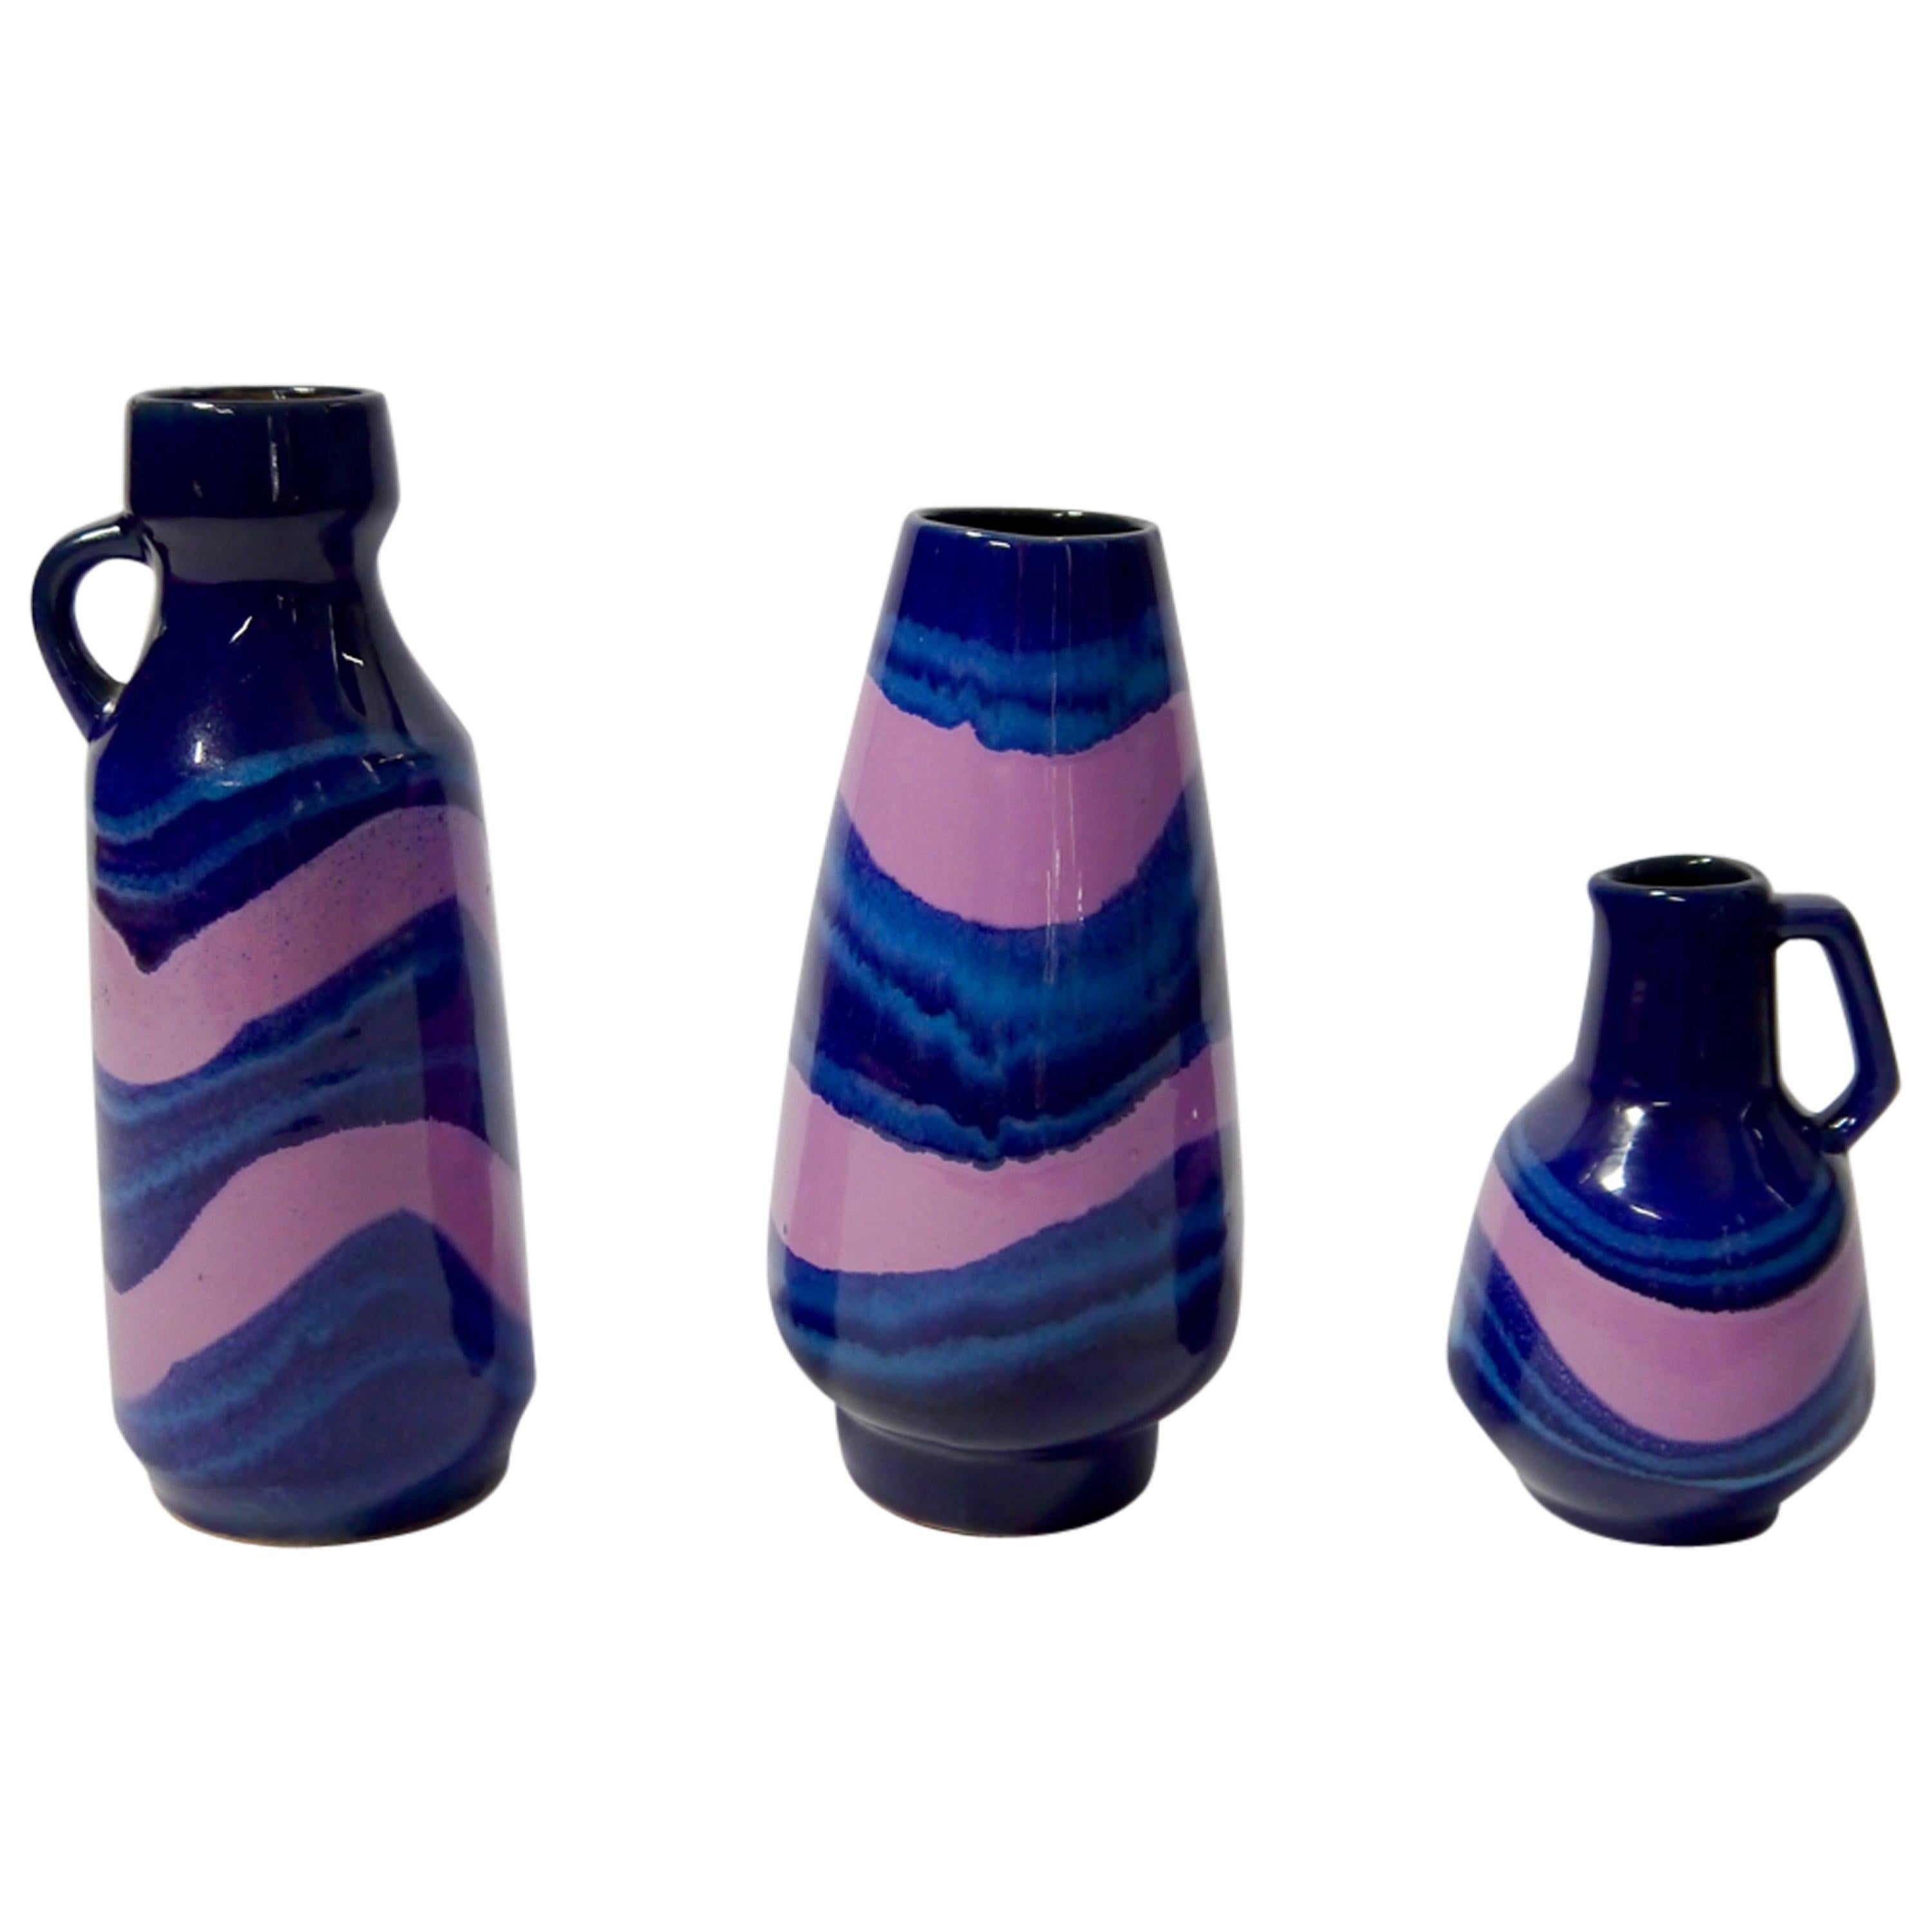 Ensemble de vases en céramique bleu et rose doux de Strehla, Allemagne de l'Est, 1970